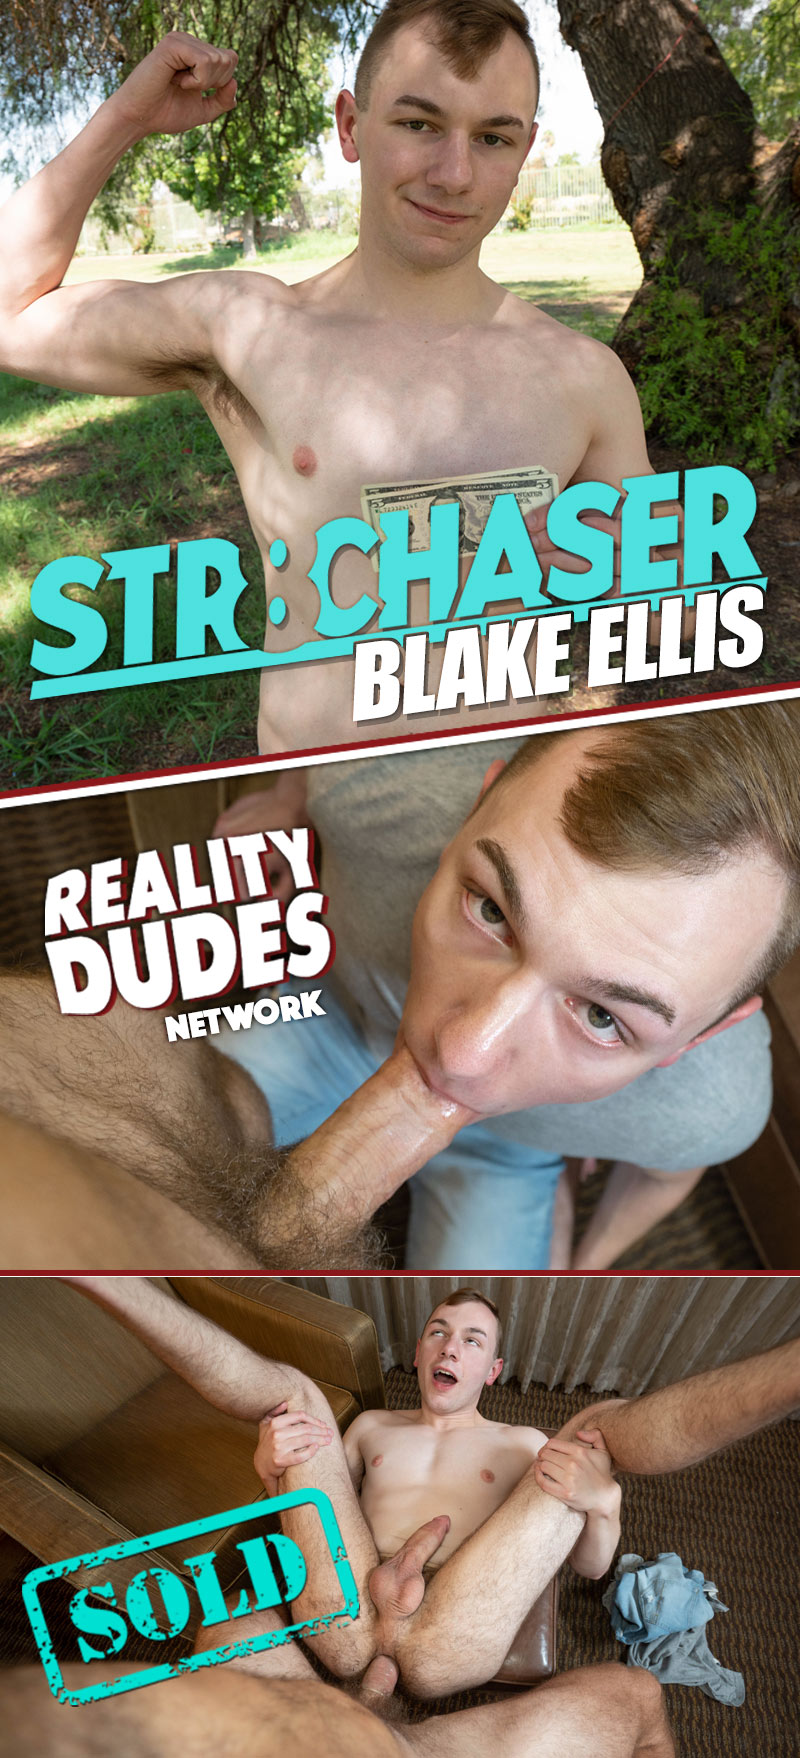 Blake Ellis at Str8 Chaser